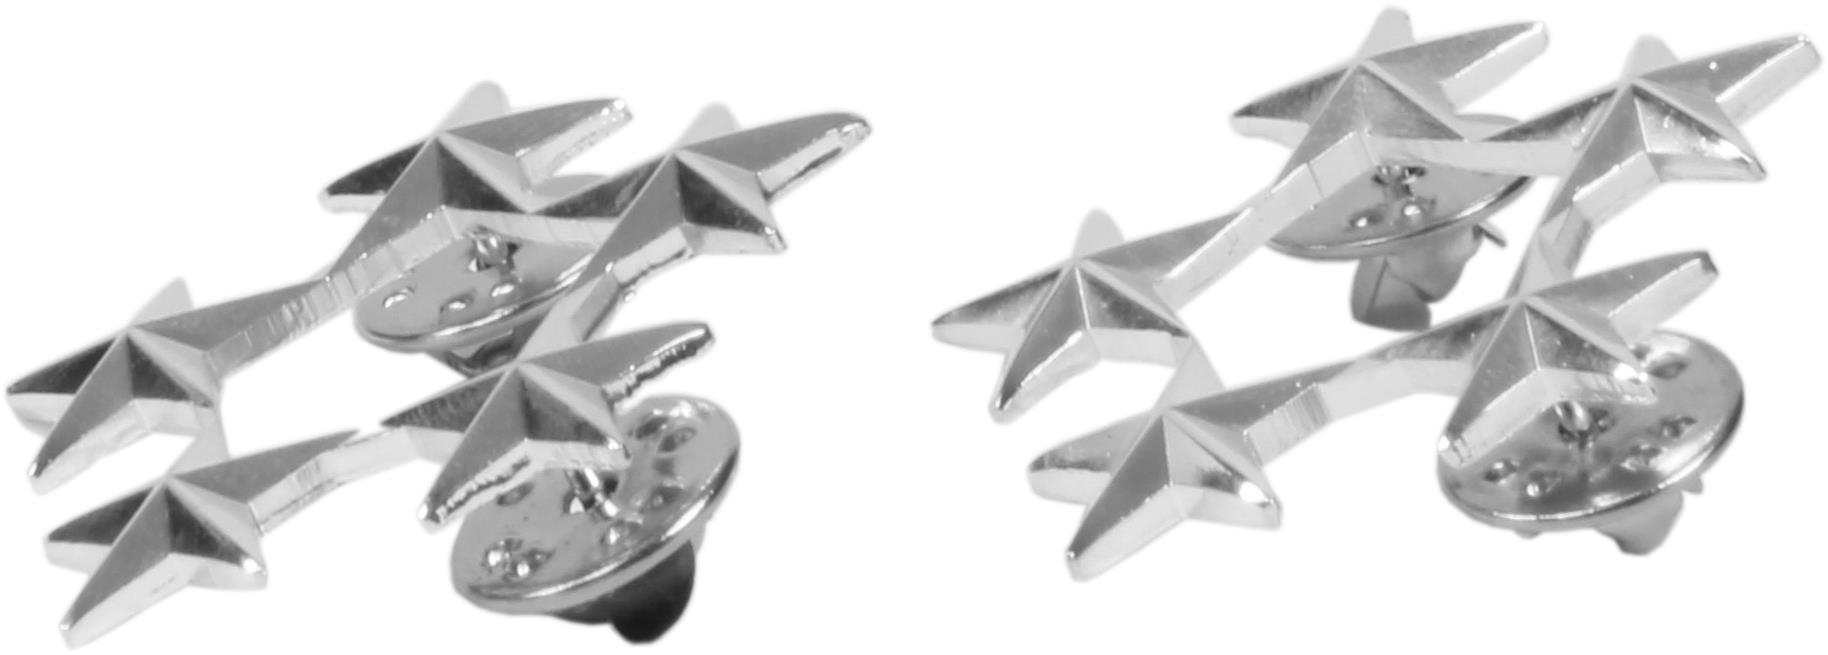 US Rangabzeichen Emblem aus Metall mit Nadelverschluss diverese Ausführungen 